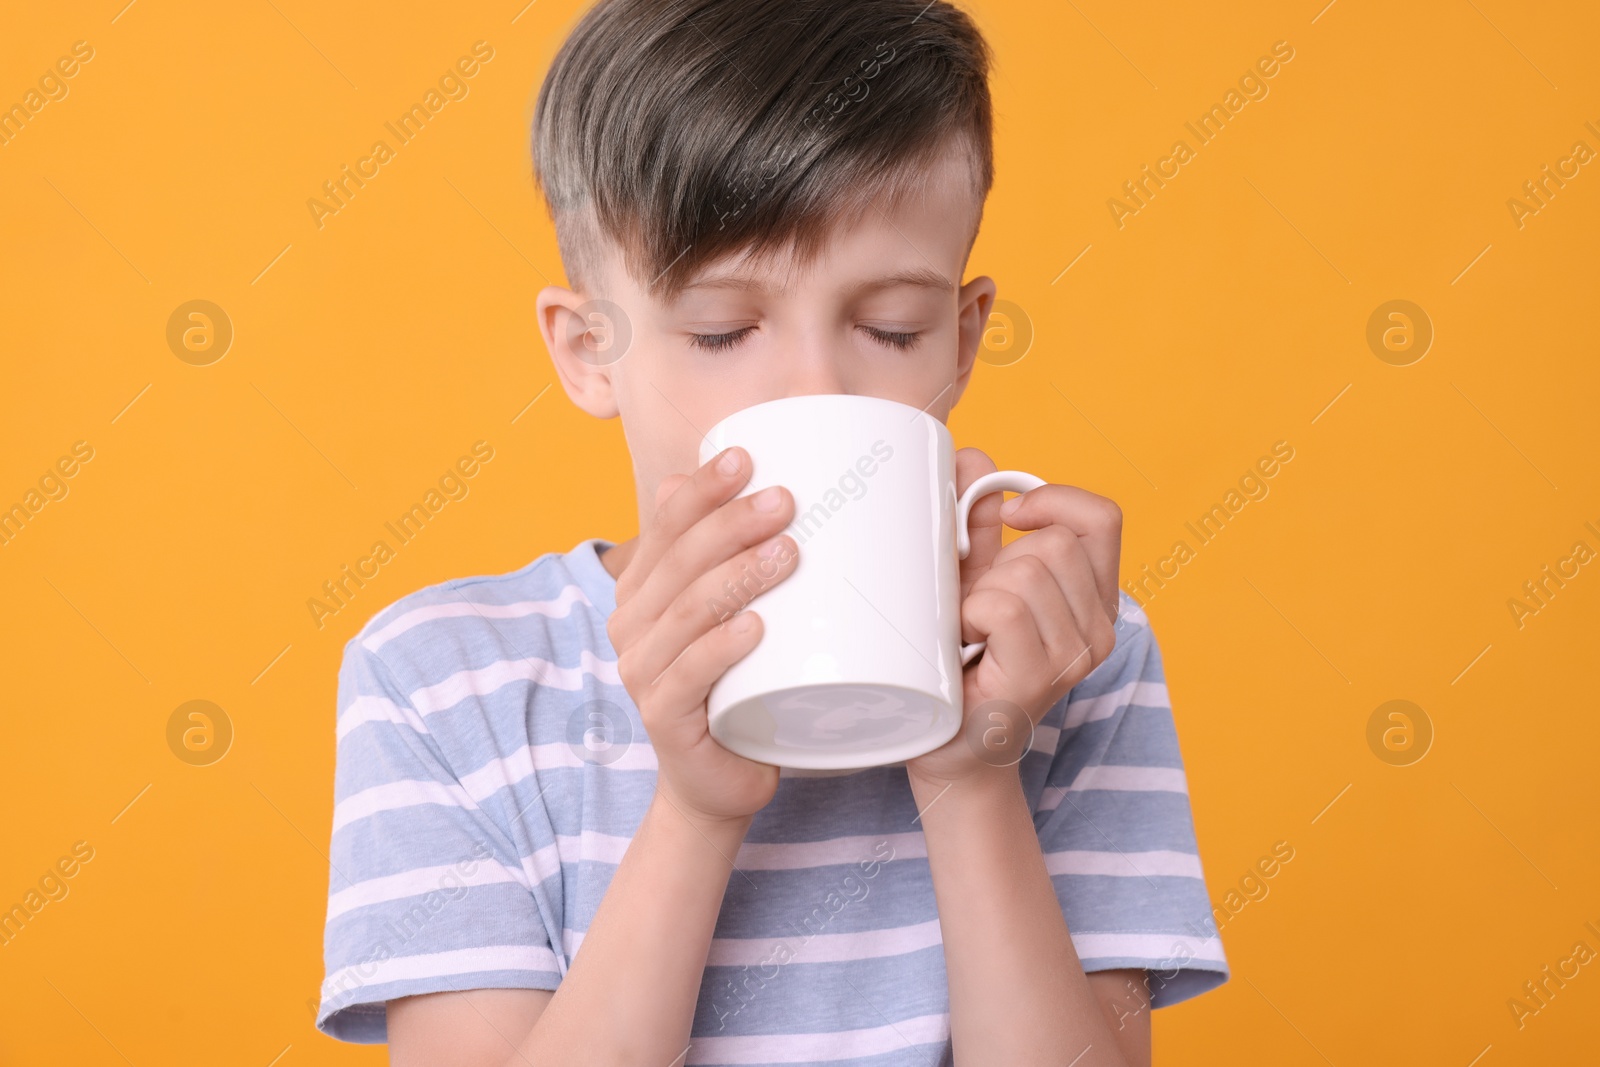 Photo of Cute boy drinking beverage from white ceramic mug on orange background